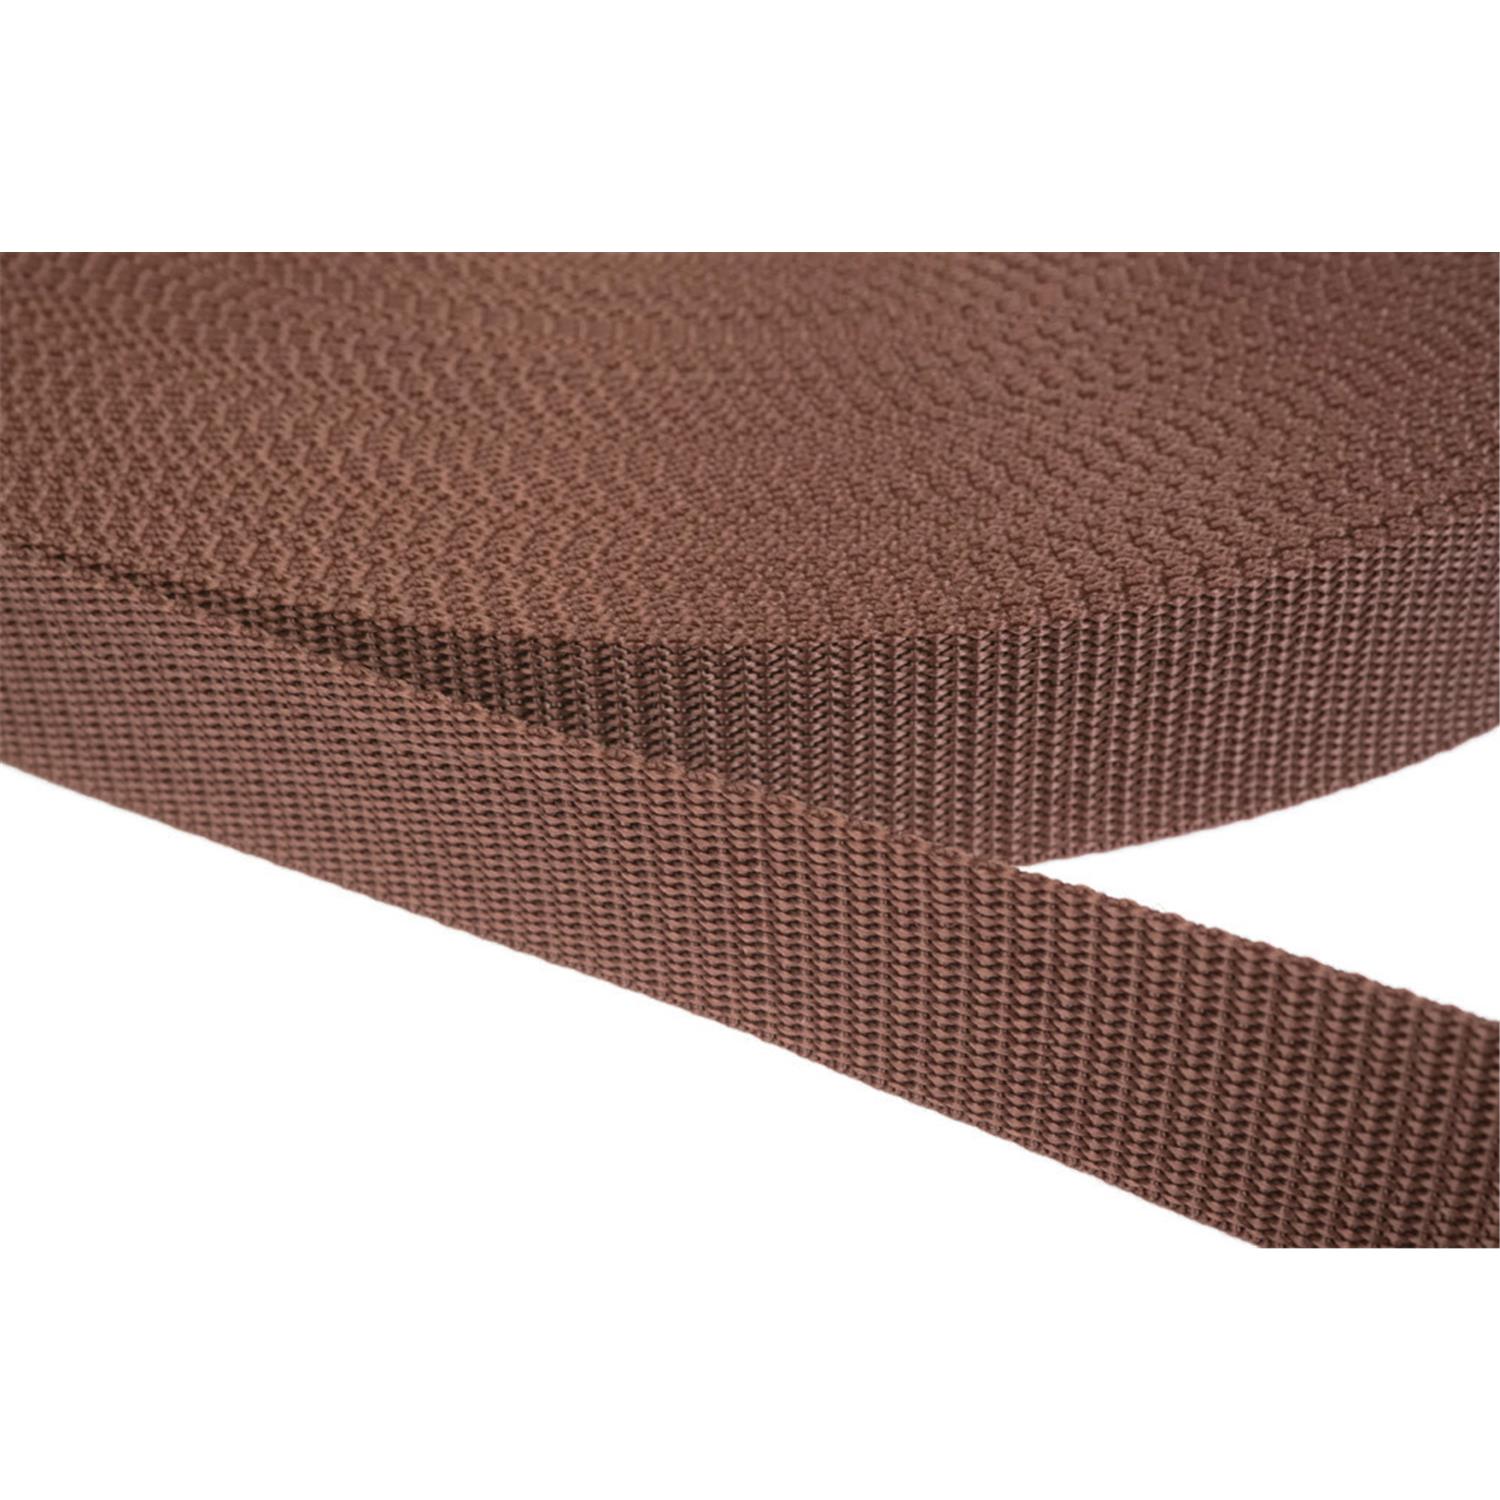 Gurtband 20mm breit aus Polypropylen in 41 Farben 07 - braun 06 Meter